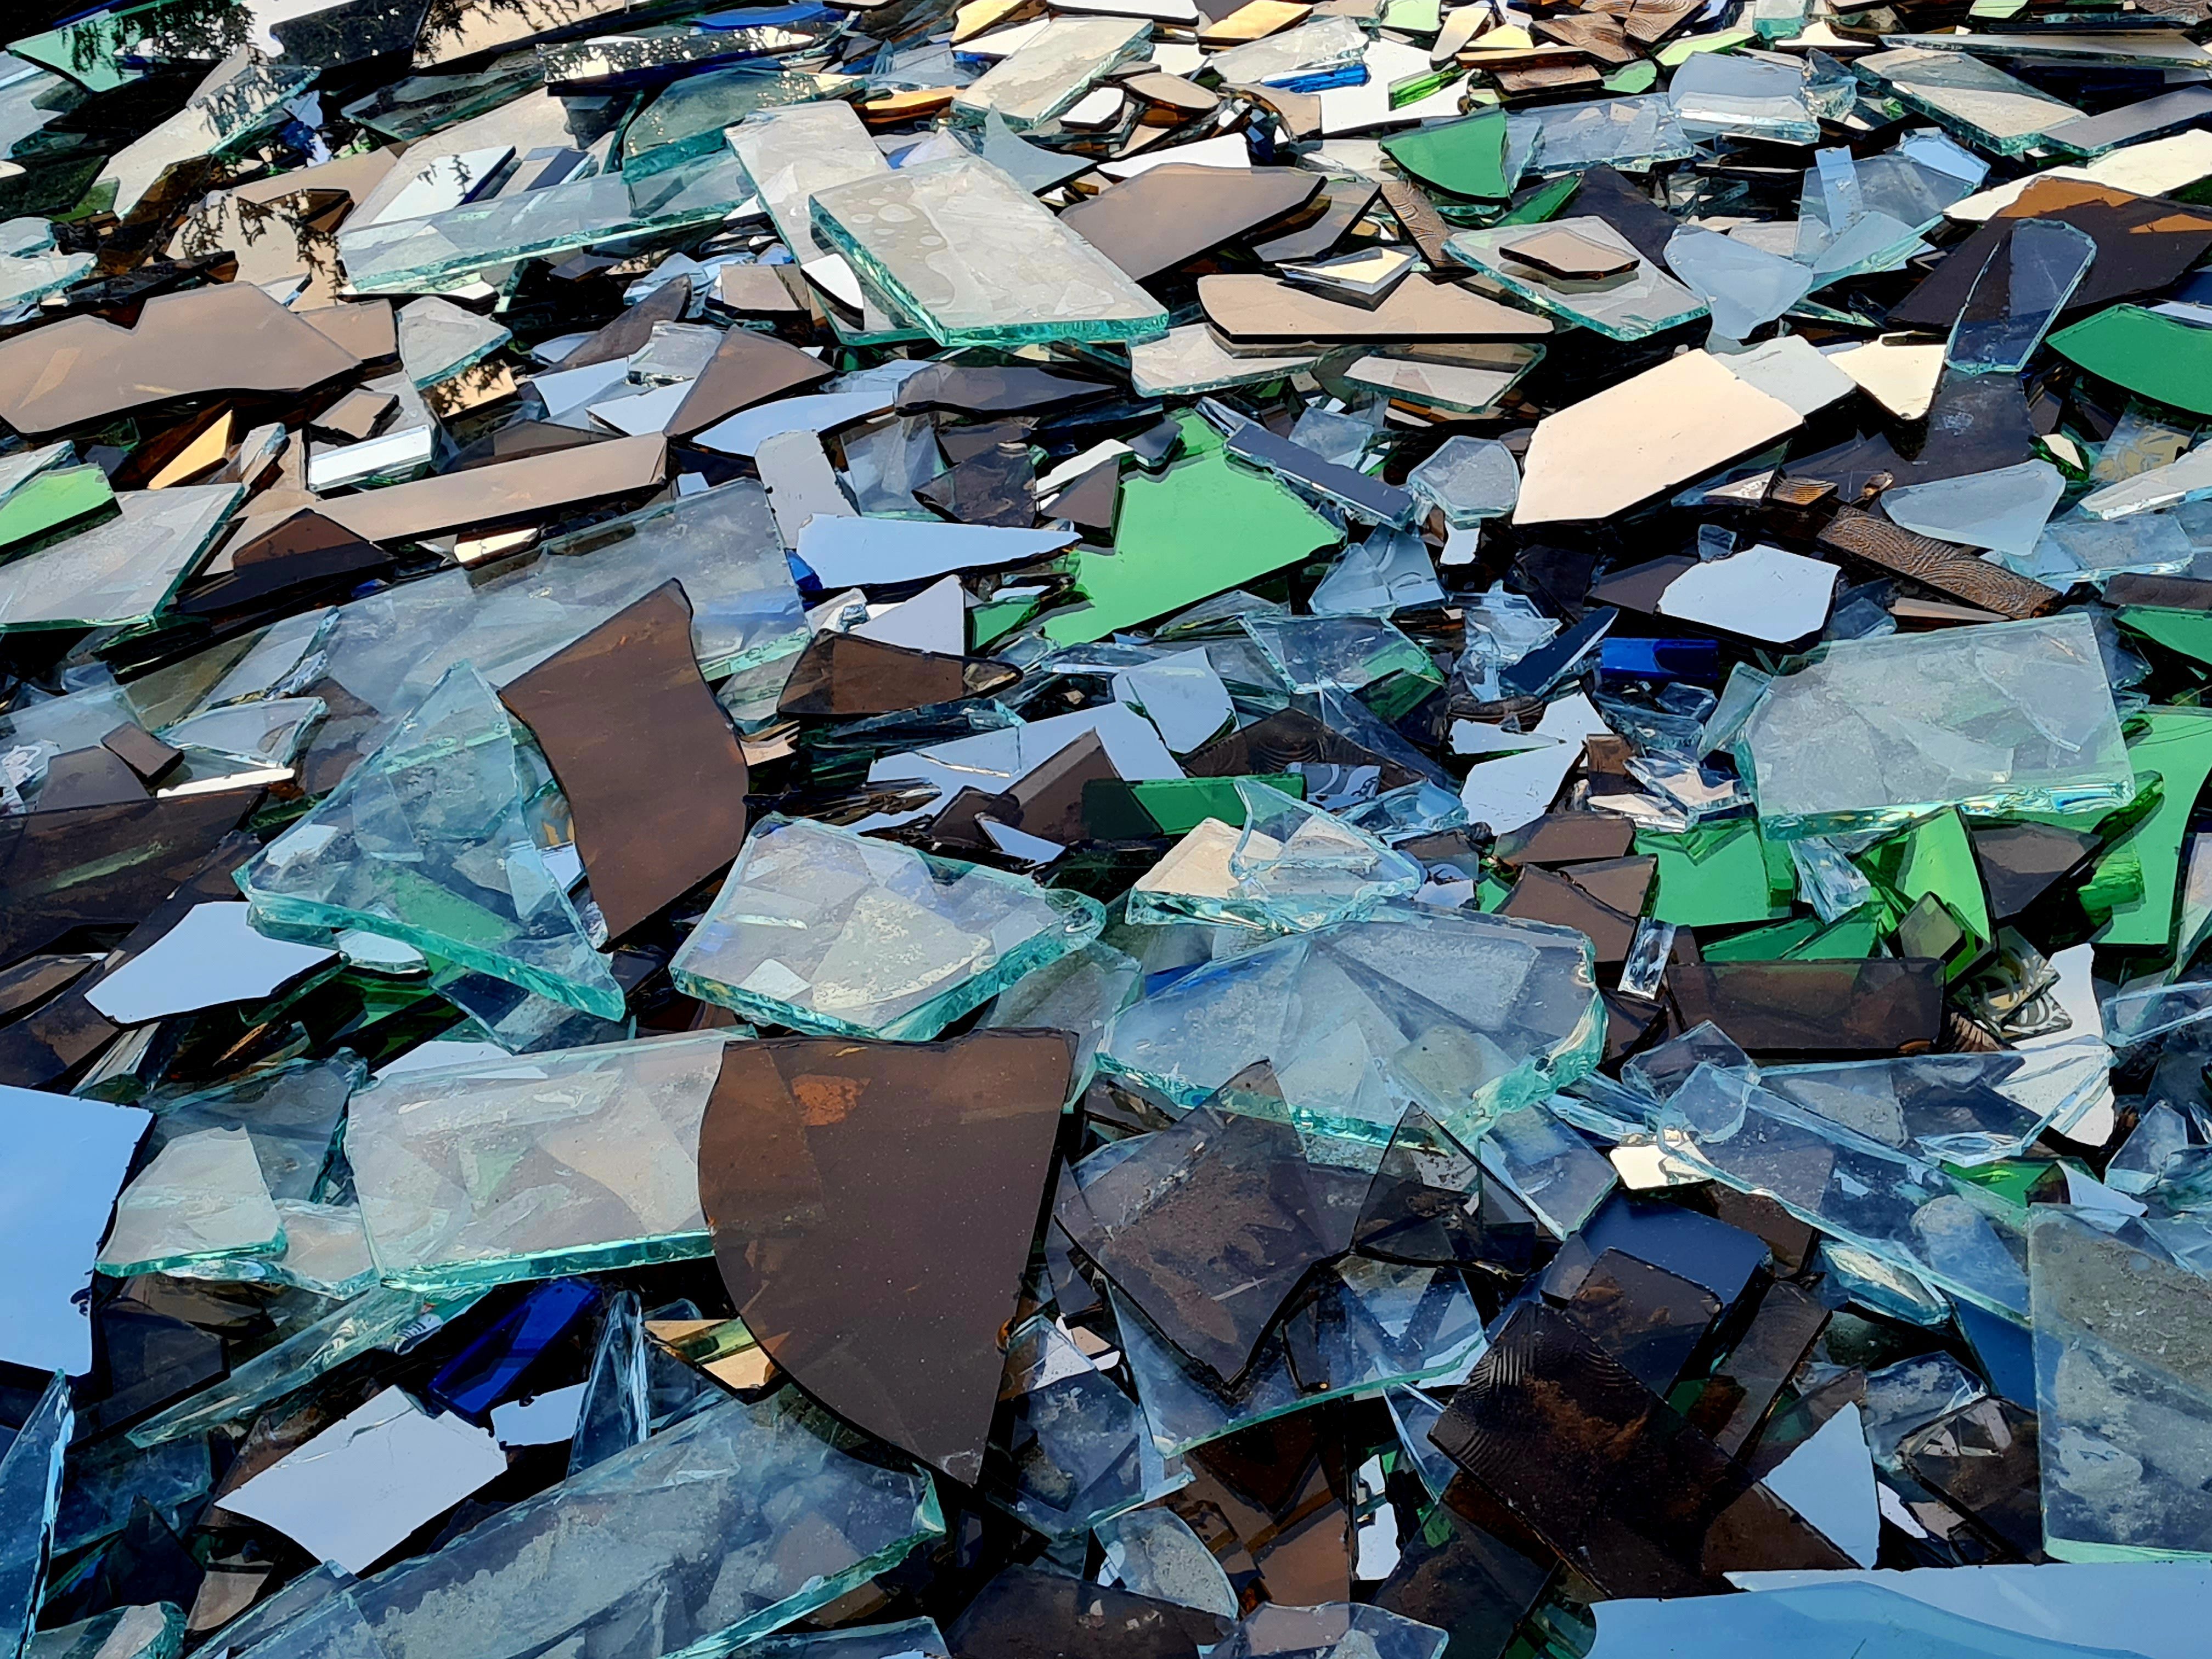 工业废玻璃回收、碎玻璃回收图像 库存照片. 图片 包括有 细分, 填充, 早餐, 部分, 伤害, 比绍 - 168287902